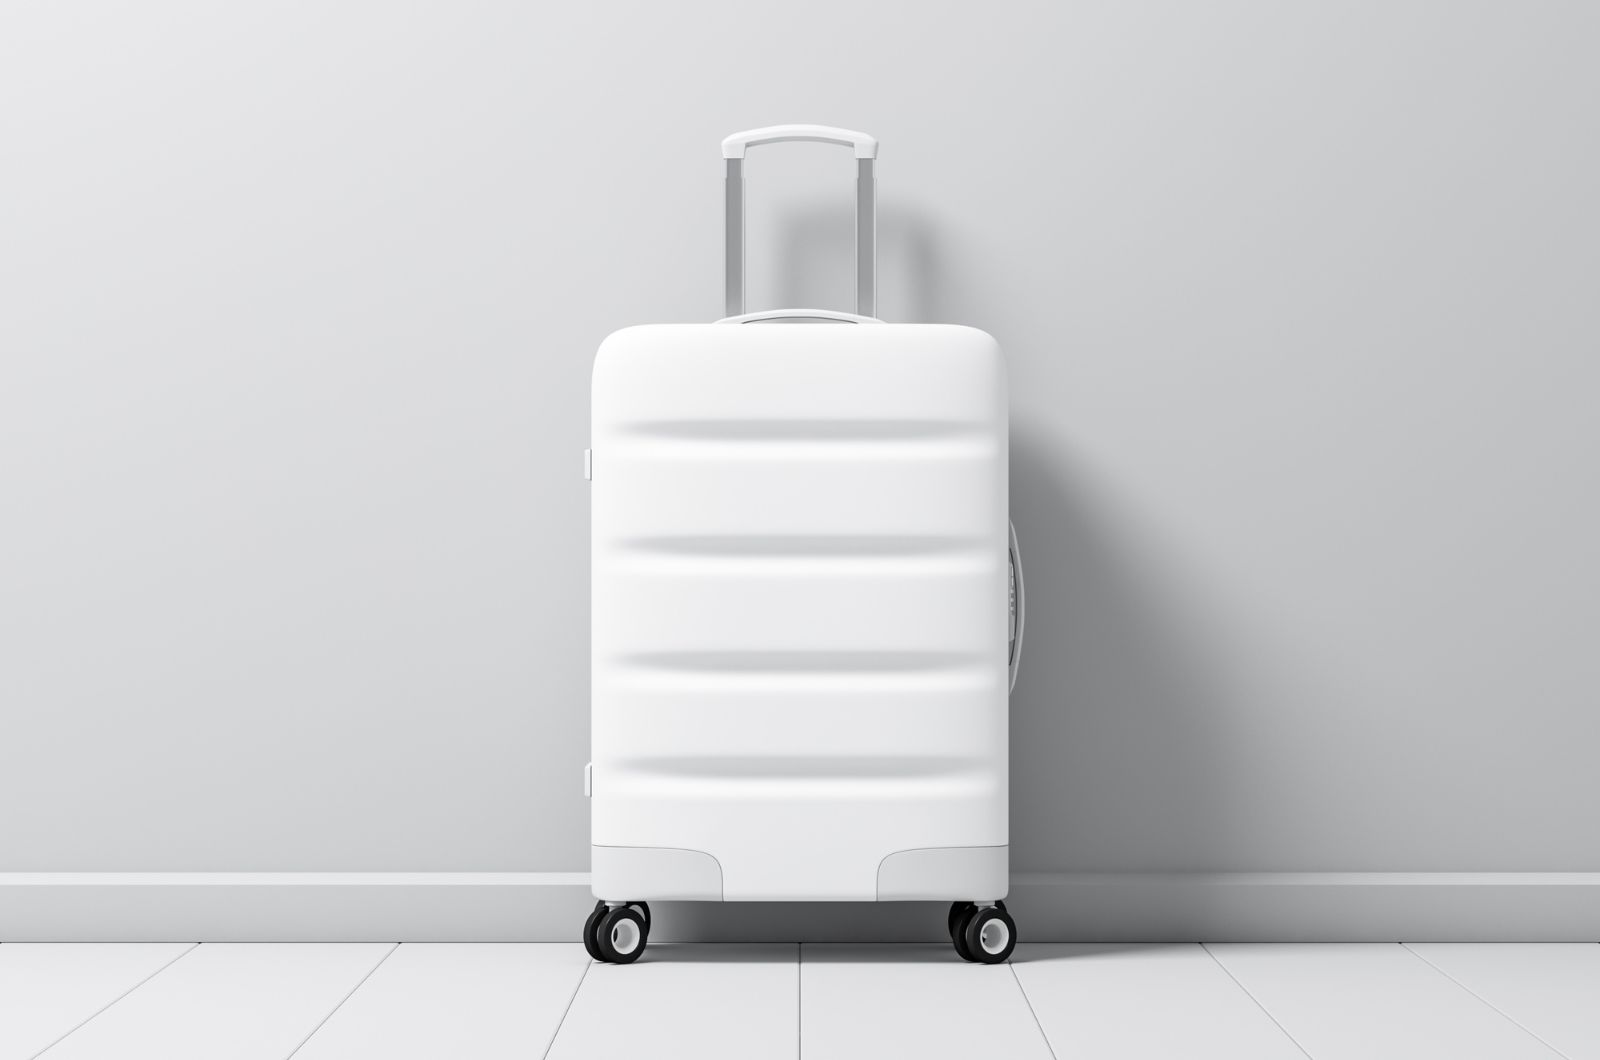 כיצד לחוות יוקרה ועמידות עם מזוודה בגודל 32 אינץ'?